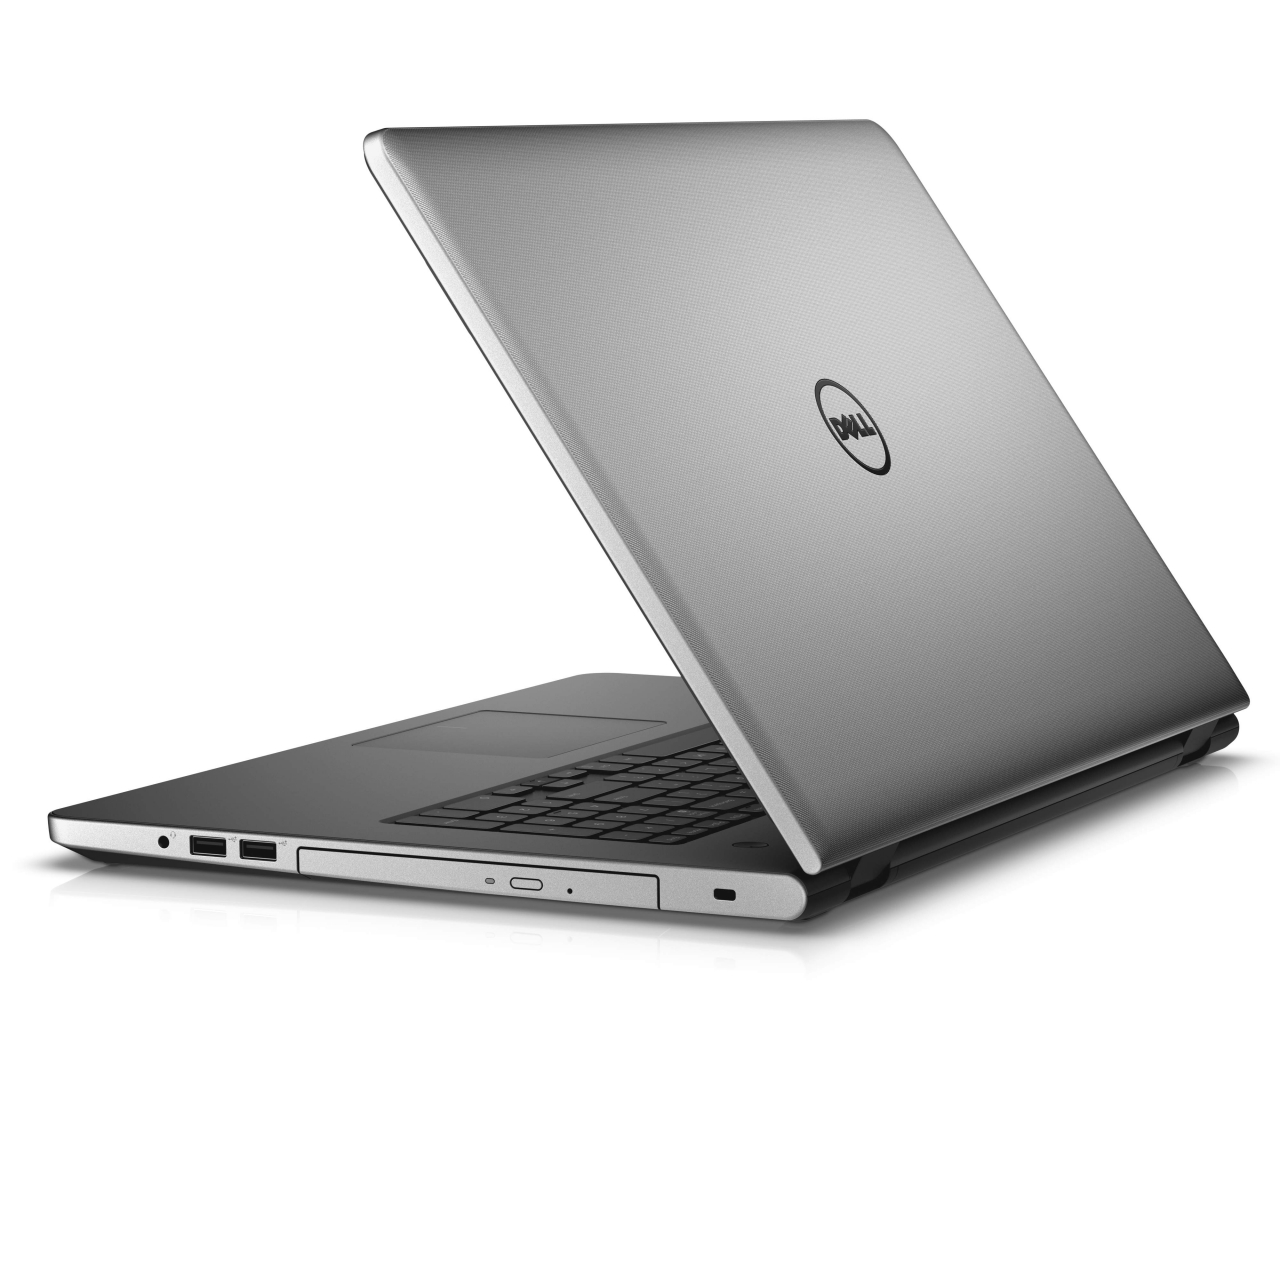 Nowe laptopy Dell Inspiron 5000 o eleganckim wyglądzie